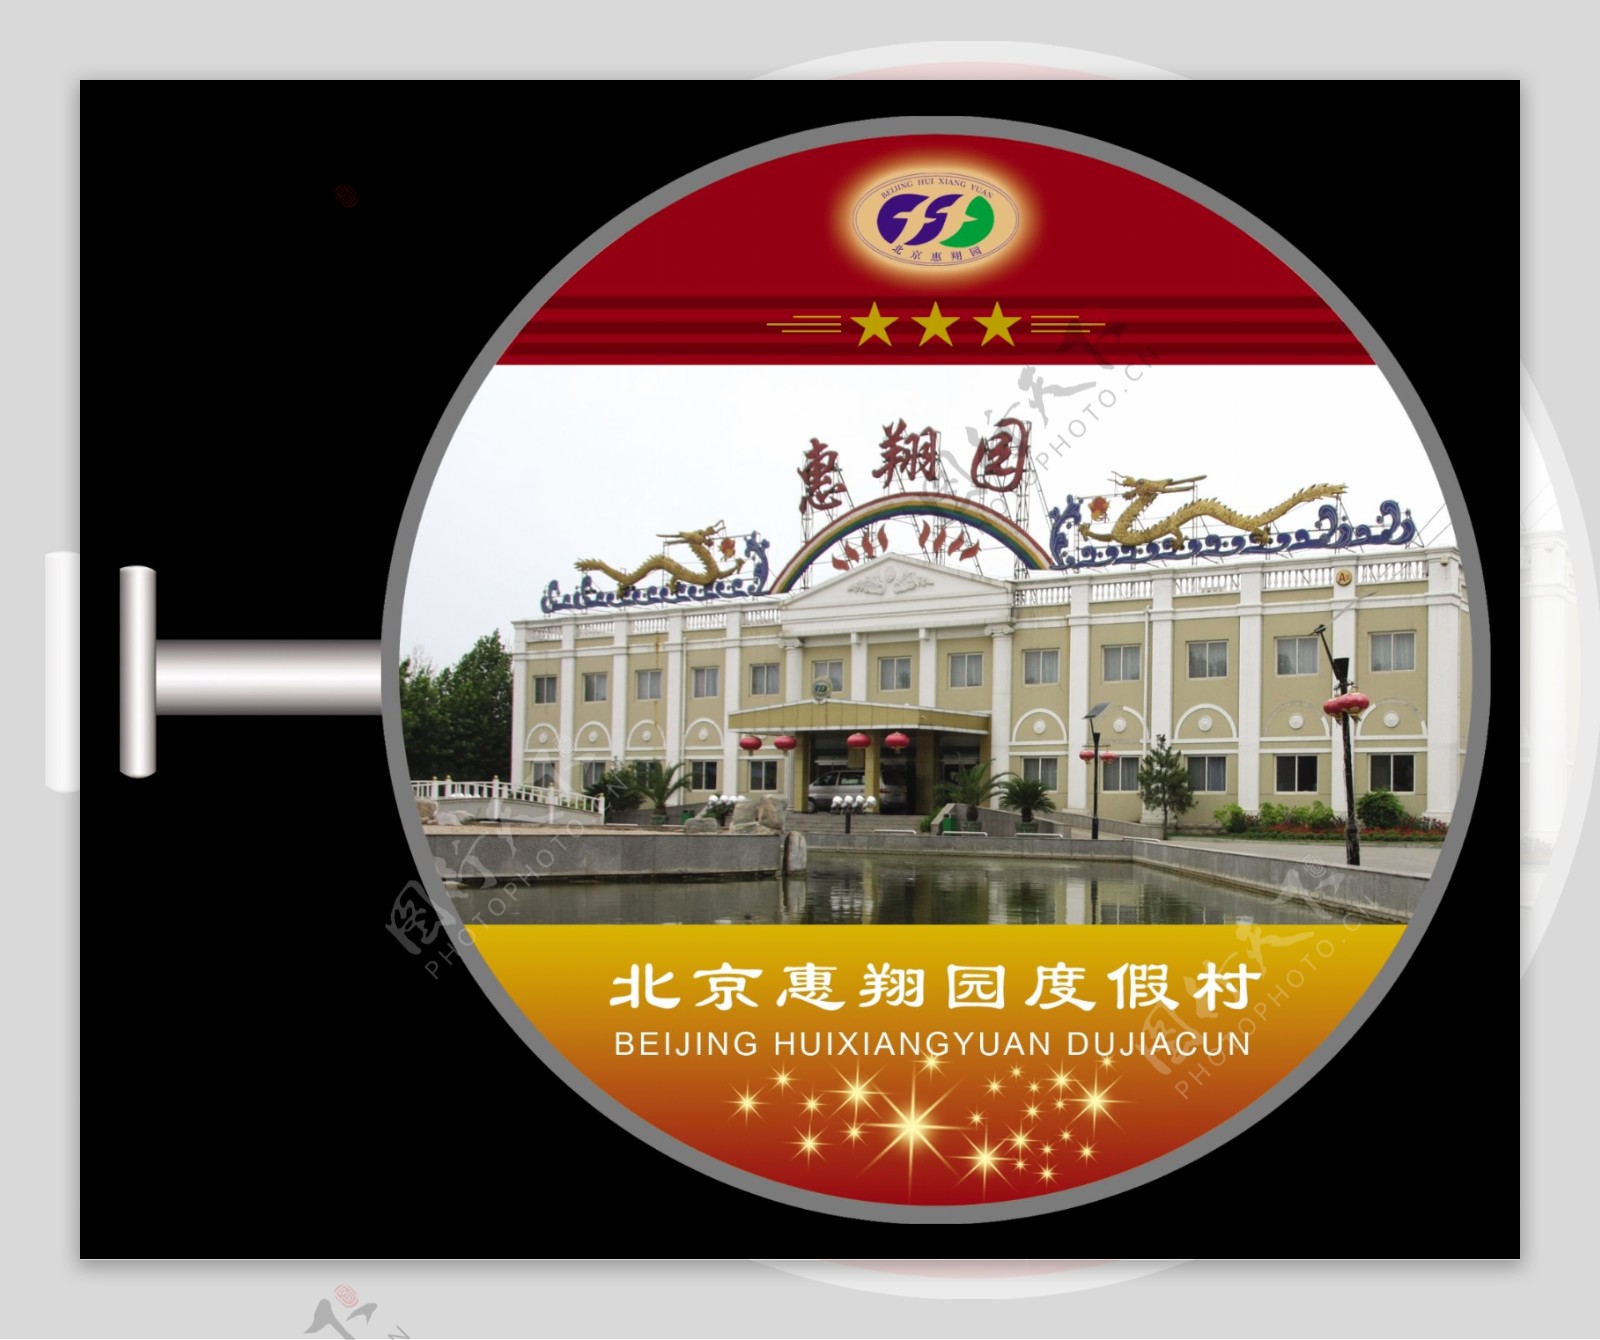 北京惠翔园度假村圆形灯箱图片